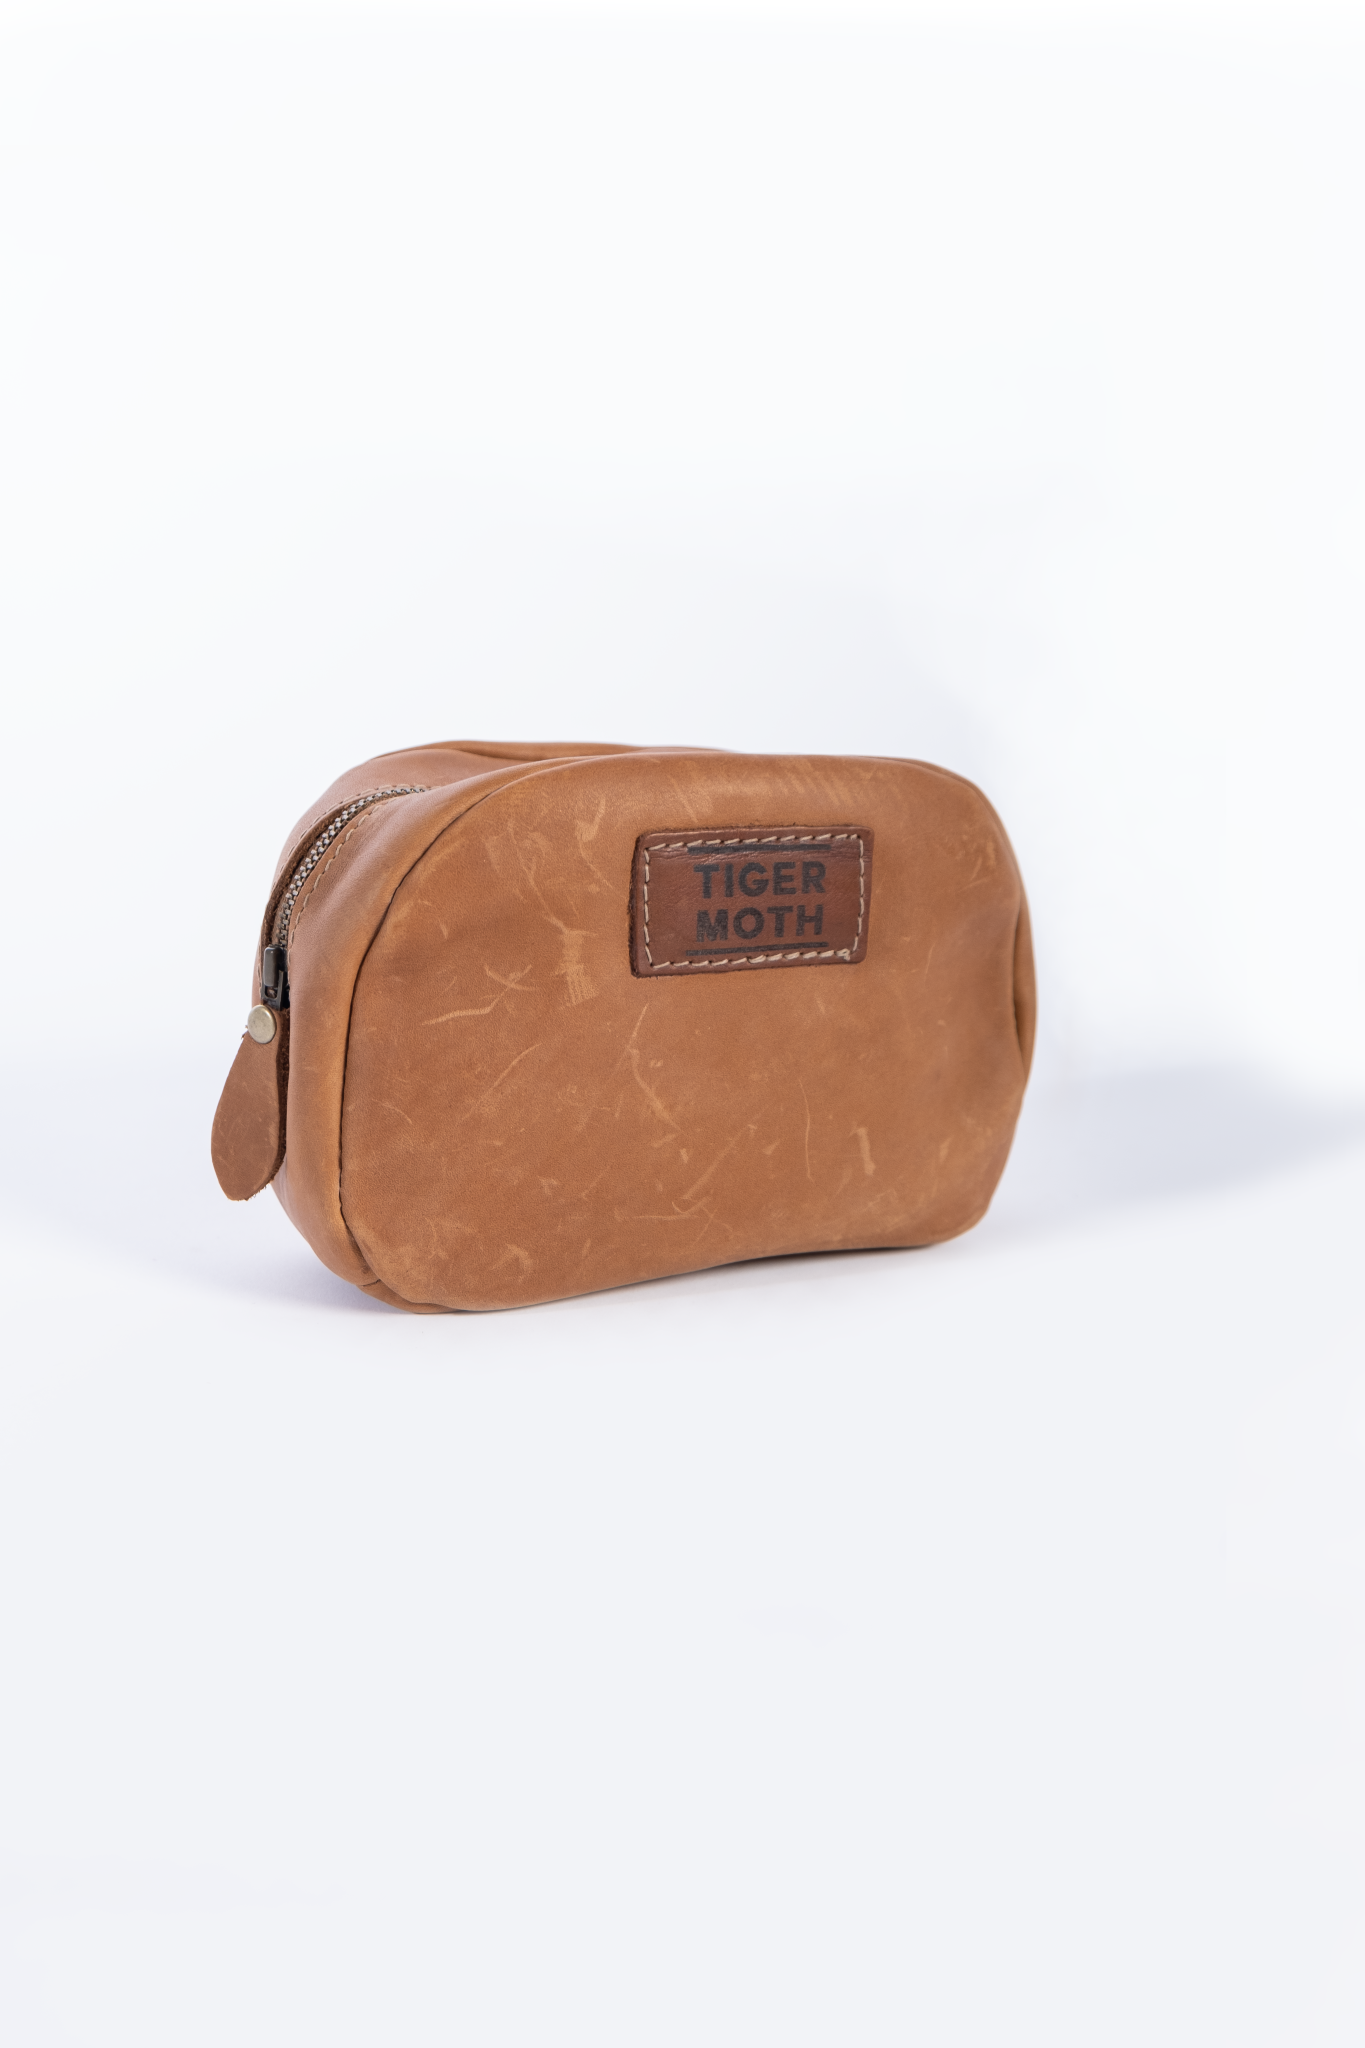 Full grain Leather Make-up Bag